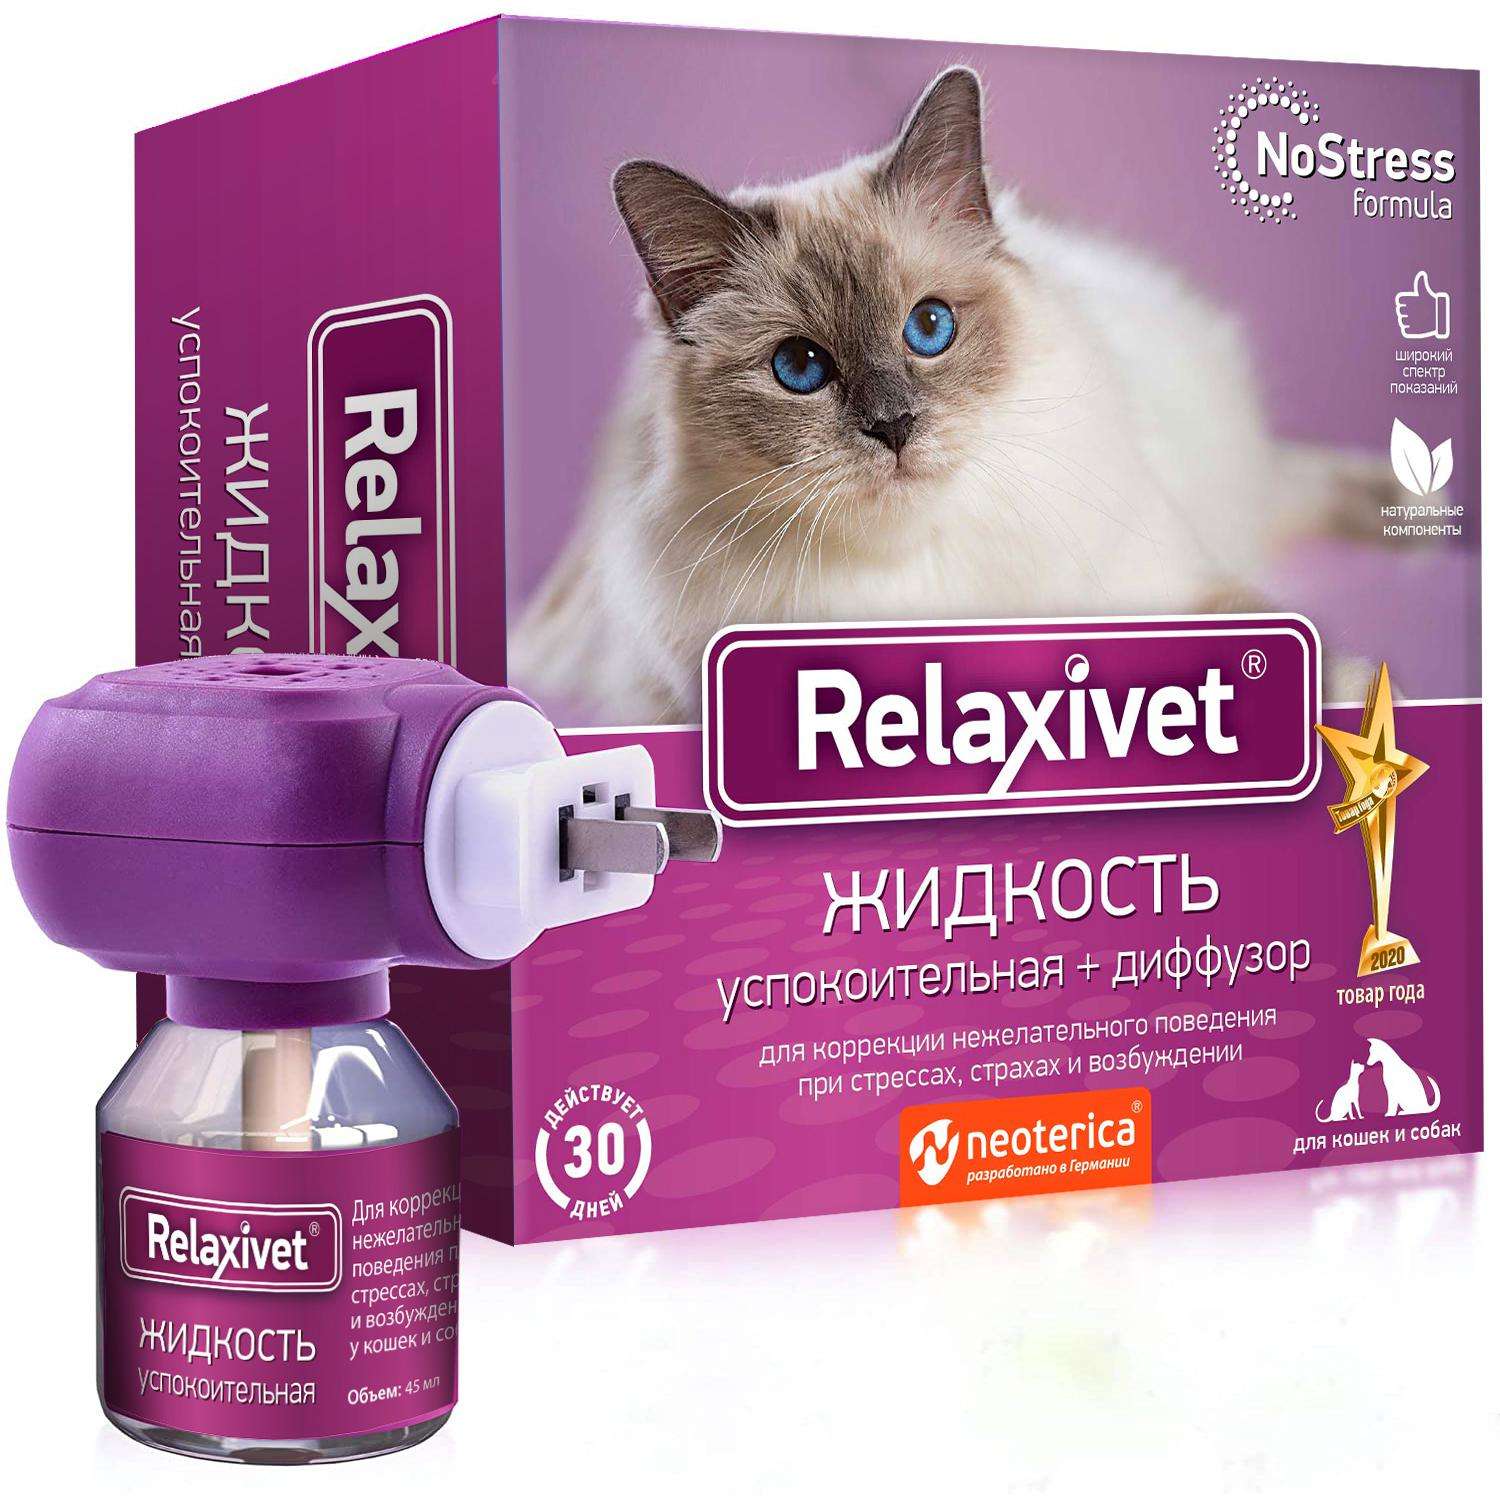 Жидкость для кошек и собак Relaxivet успокоительная диффузор 45мл - фото 5